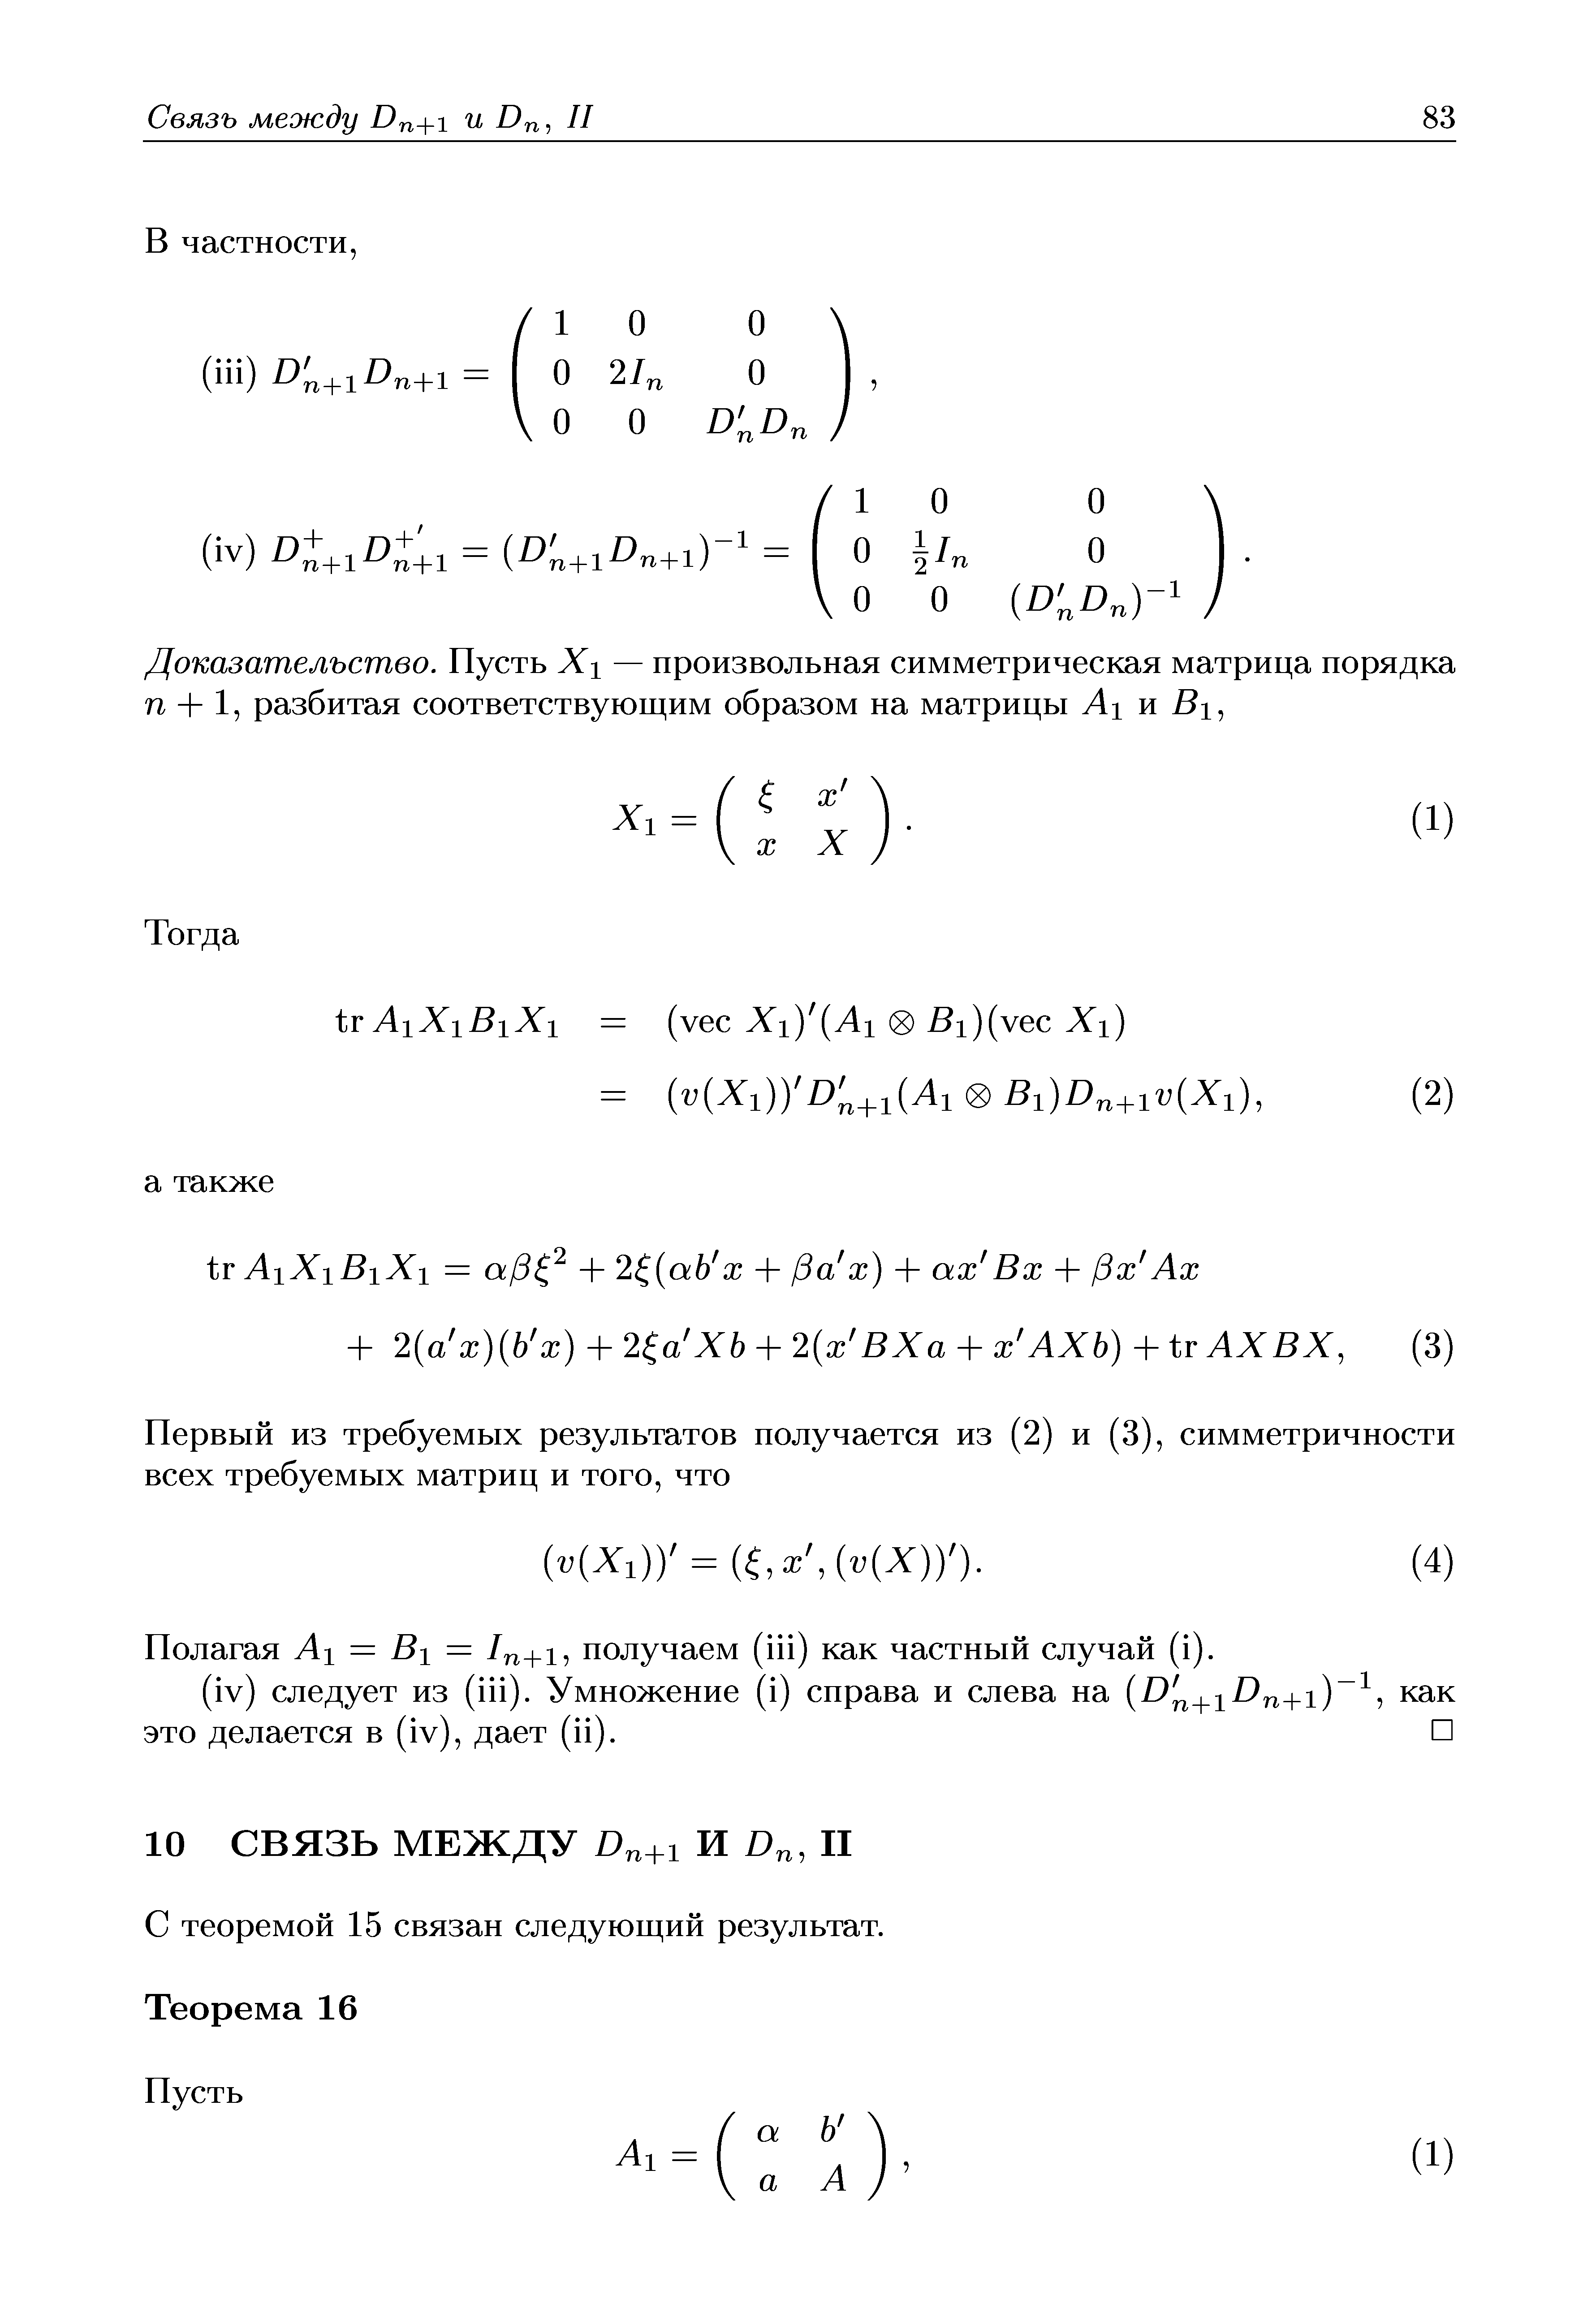 Полагая AI = BI = /n+i, получаем (iii) как частный случай (i).
